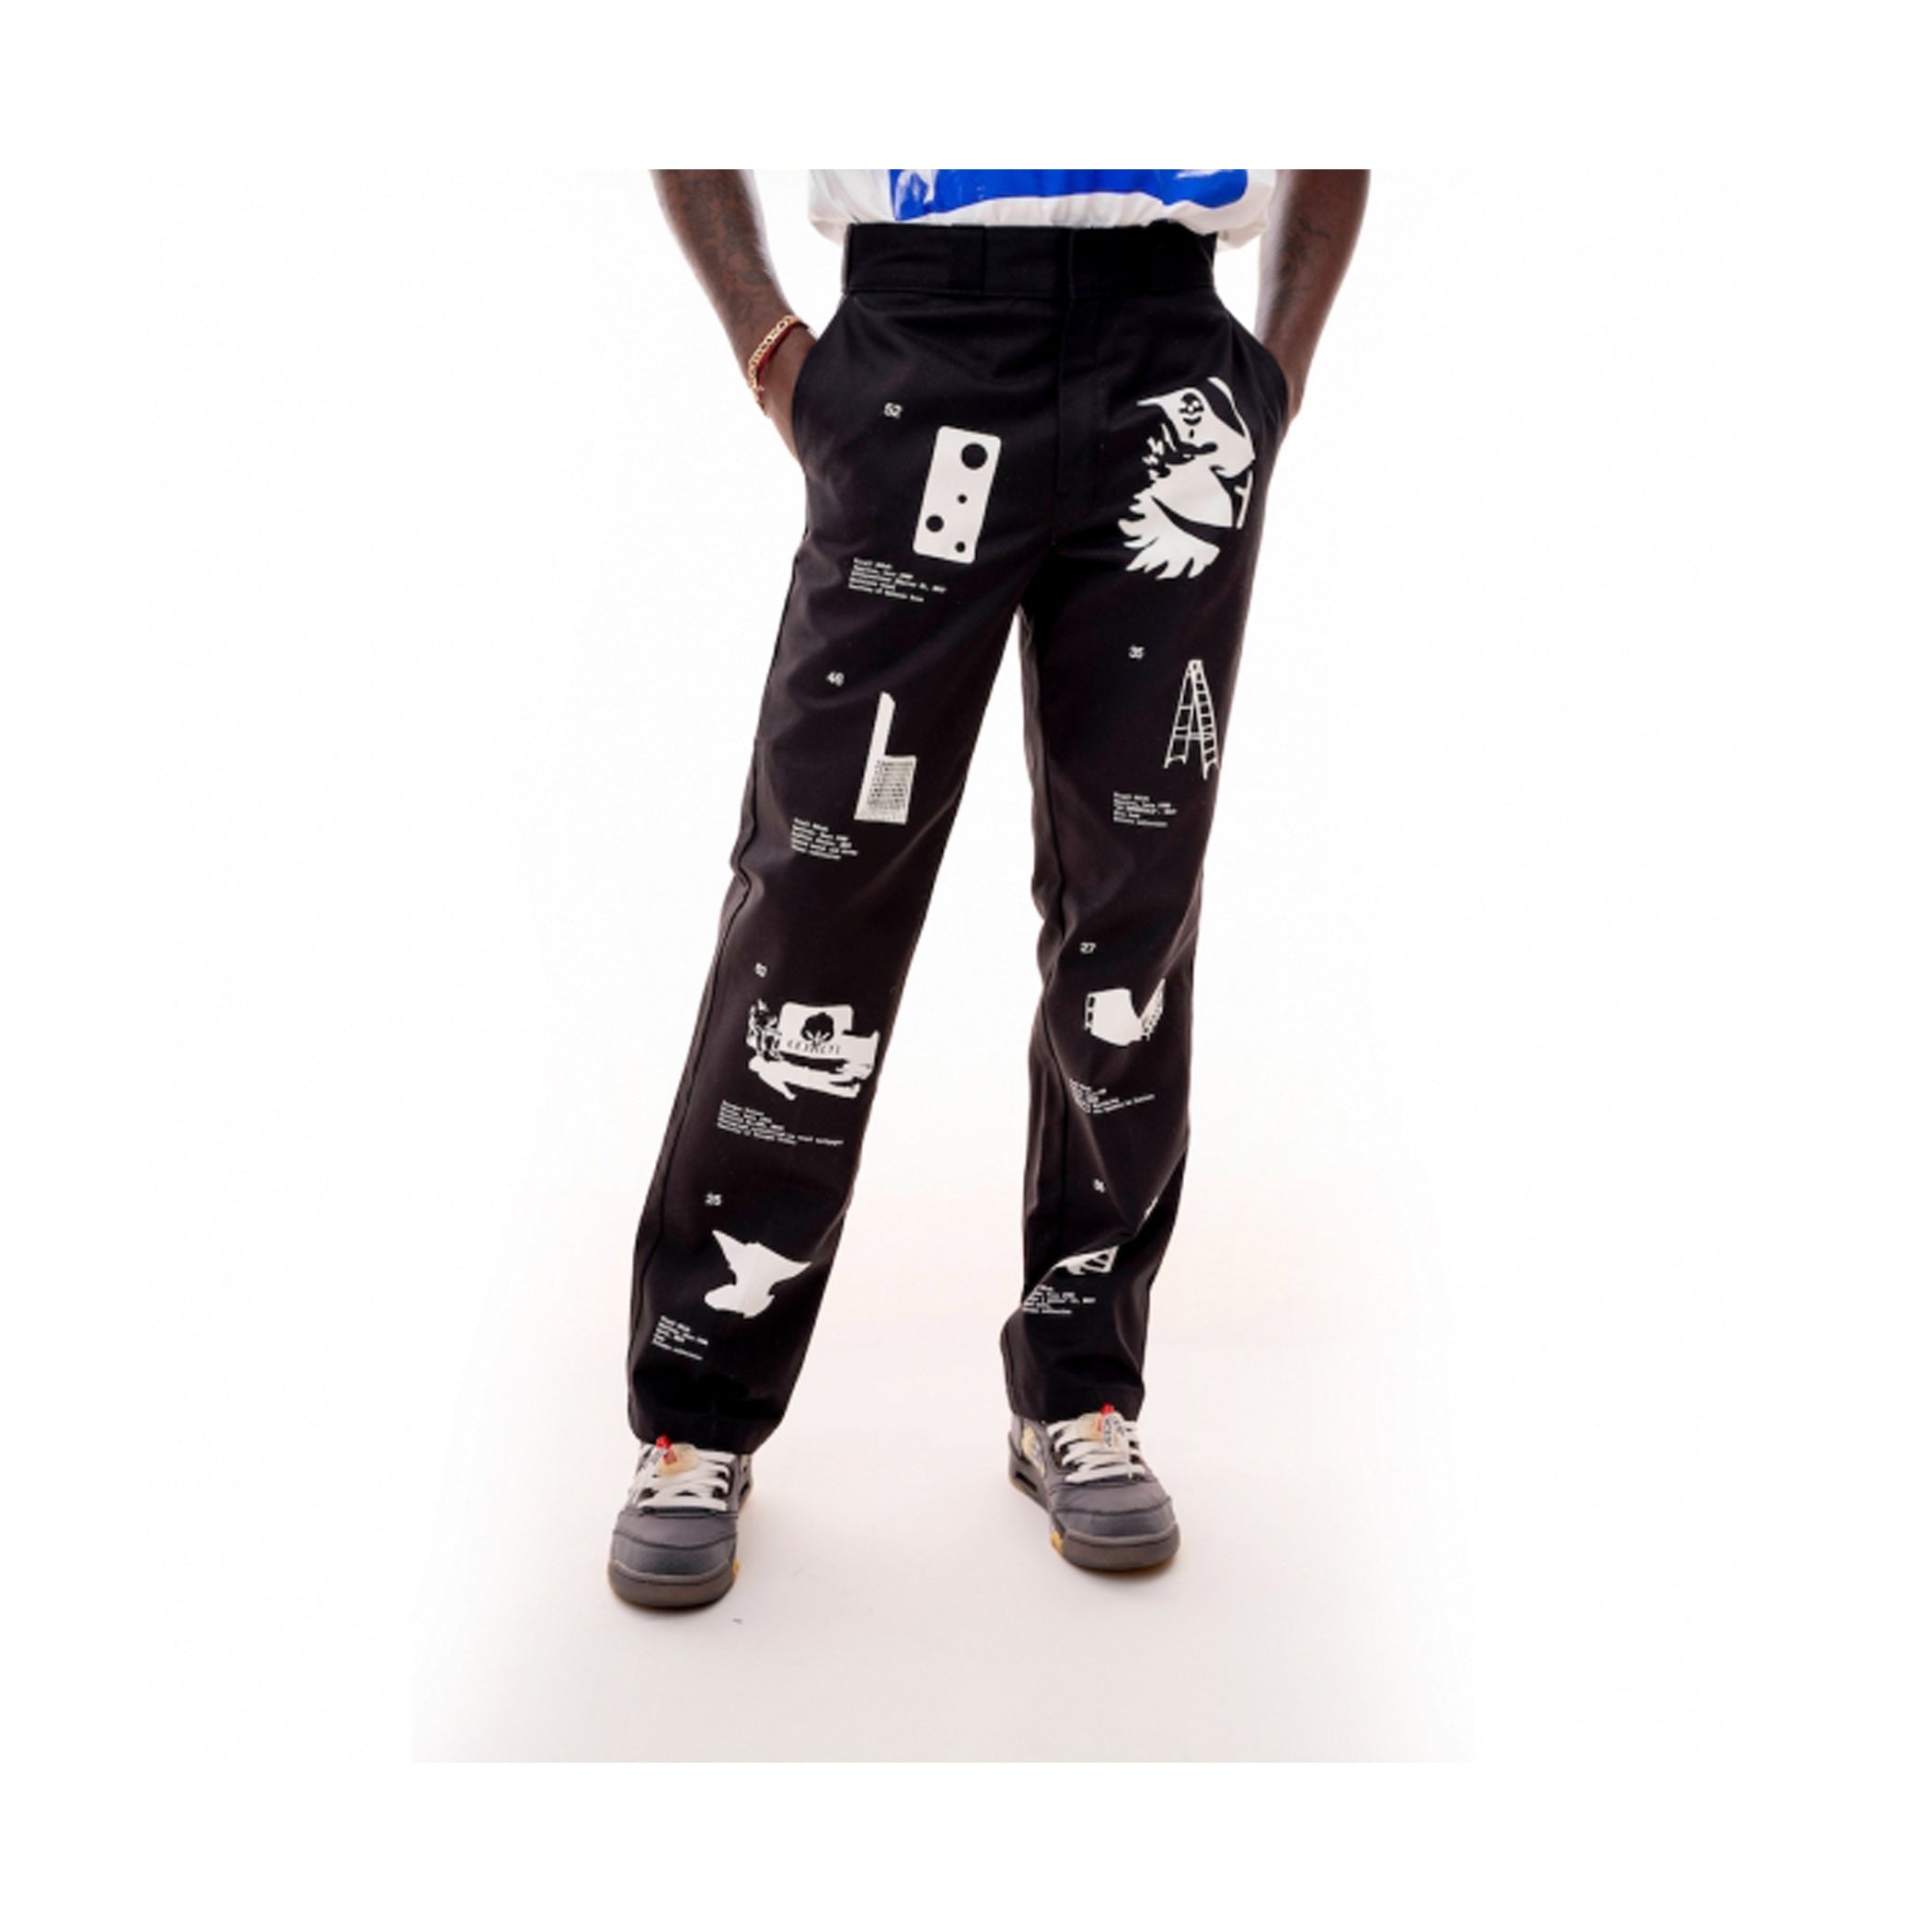 Virgil Abloh x Dickies x ICA “Work Pants” Streetwear Outfit